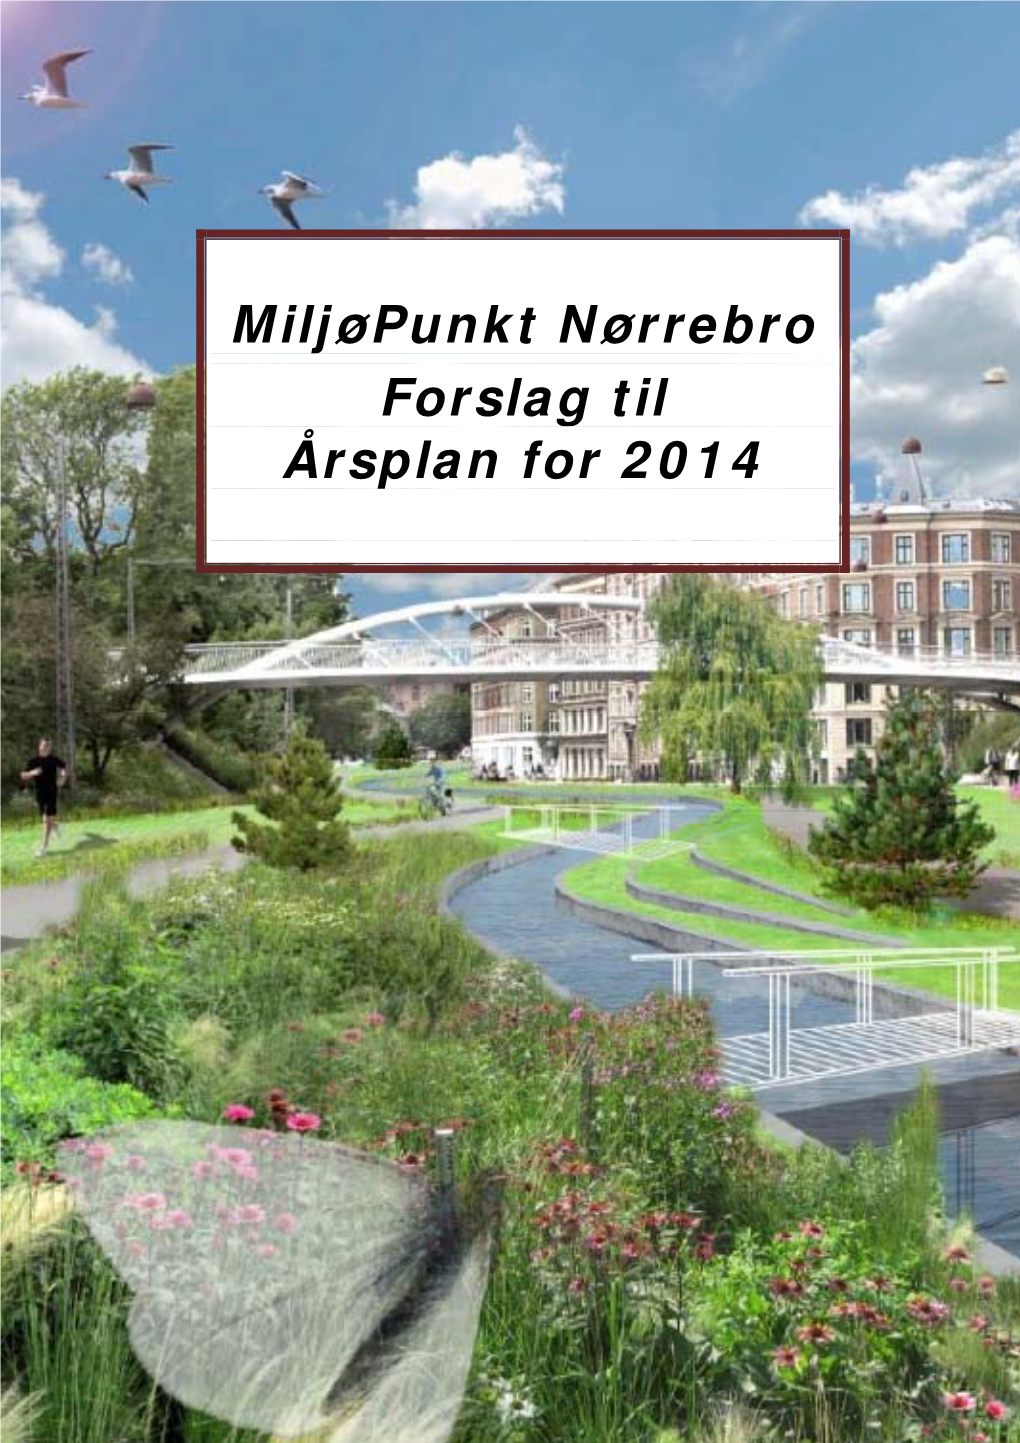 Miljøpunkt Nørrebro Forslag Til Årsplan for 2014